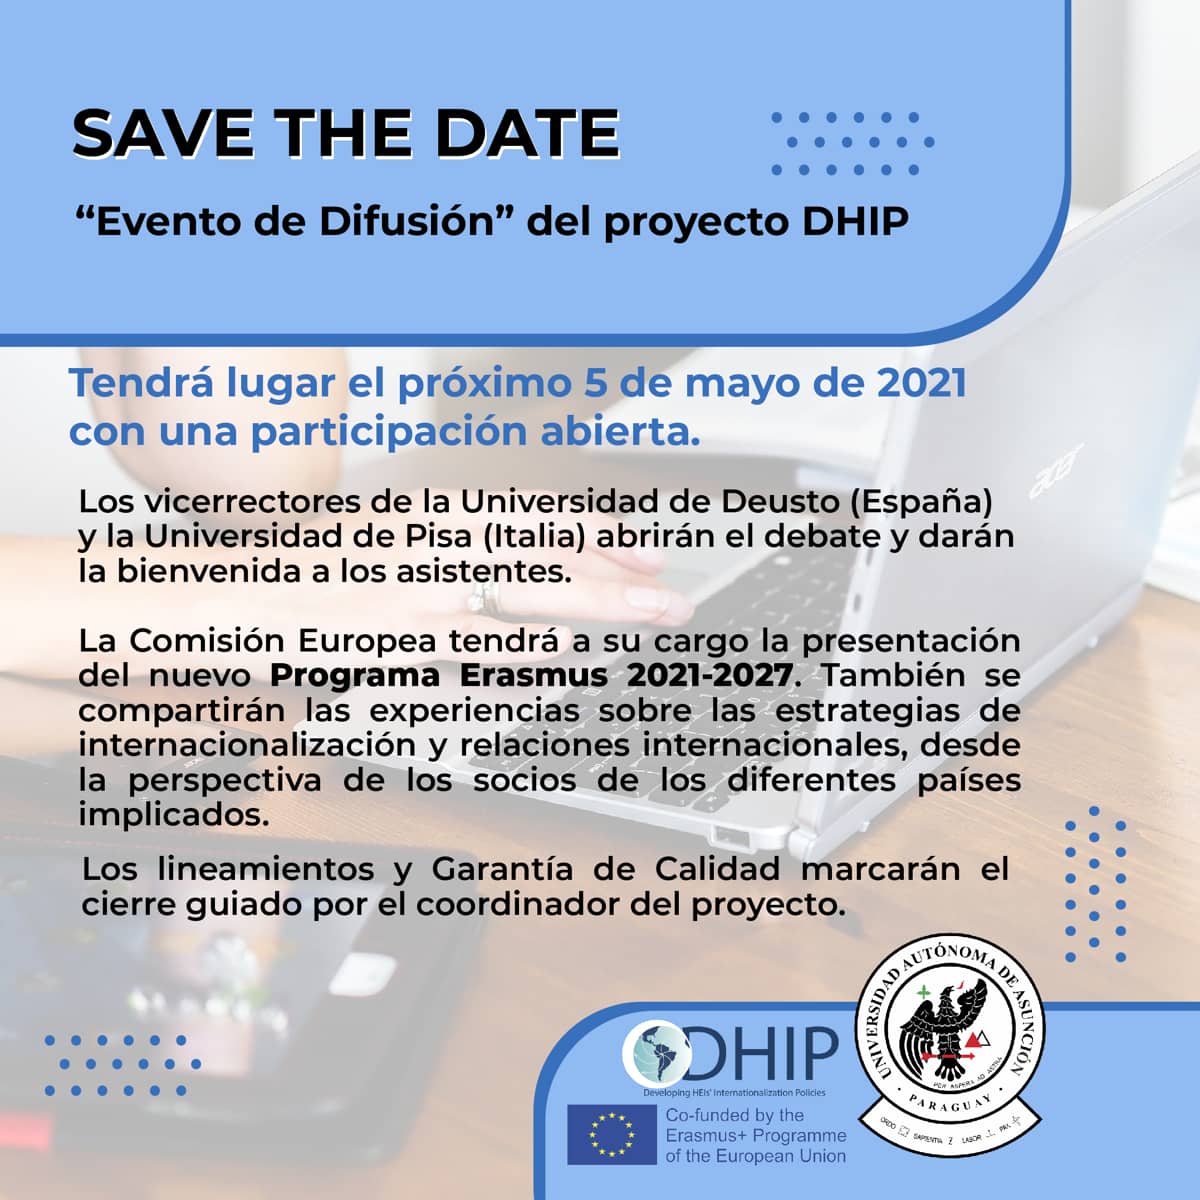 "Evento de Difusión" del Proyecto DHIP.